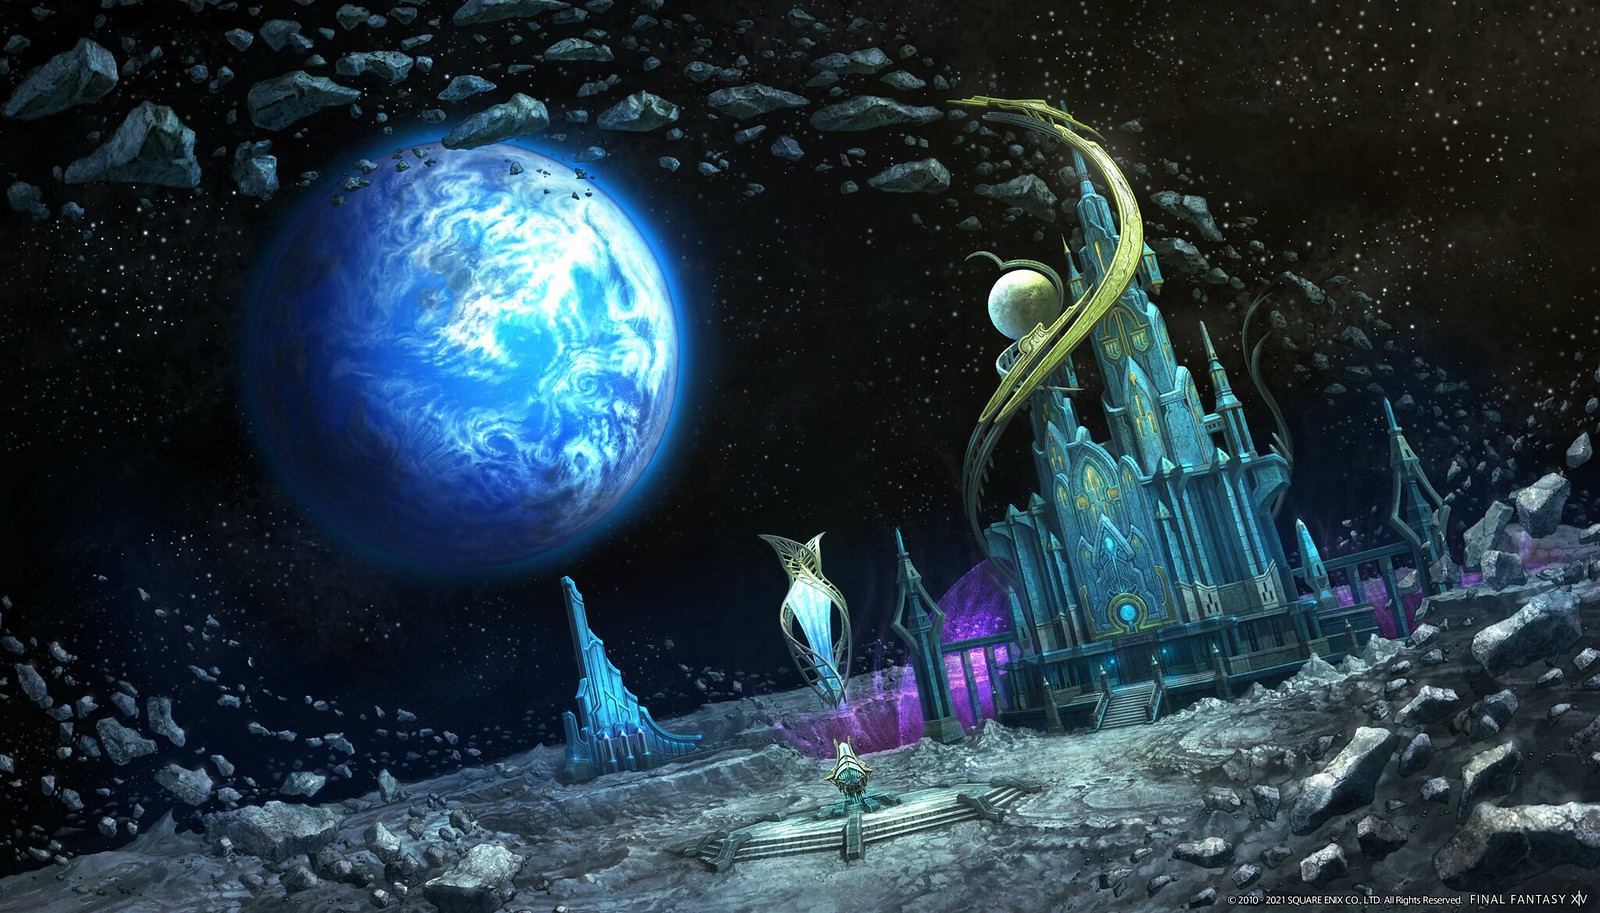 Final Fantasy XIV: Endwalker - November 2022 expansion